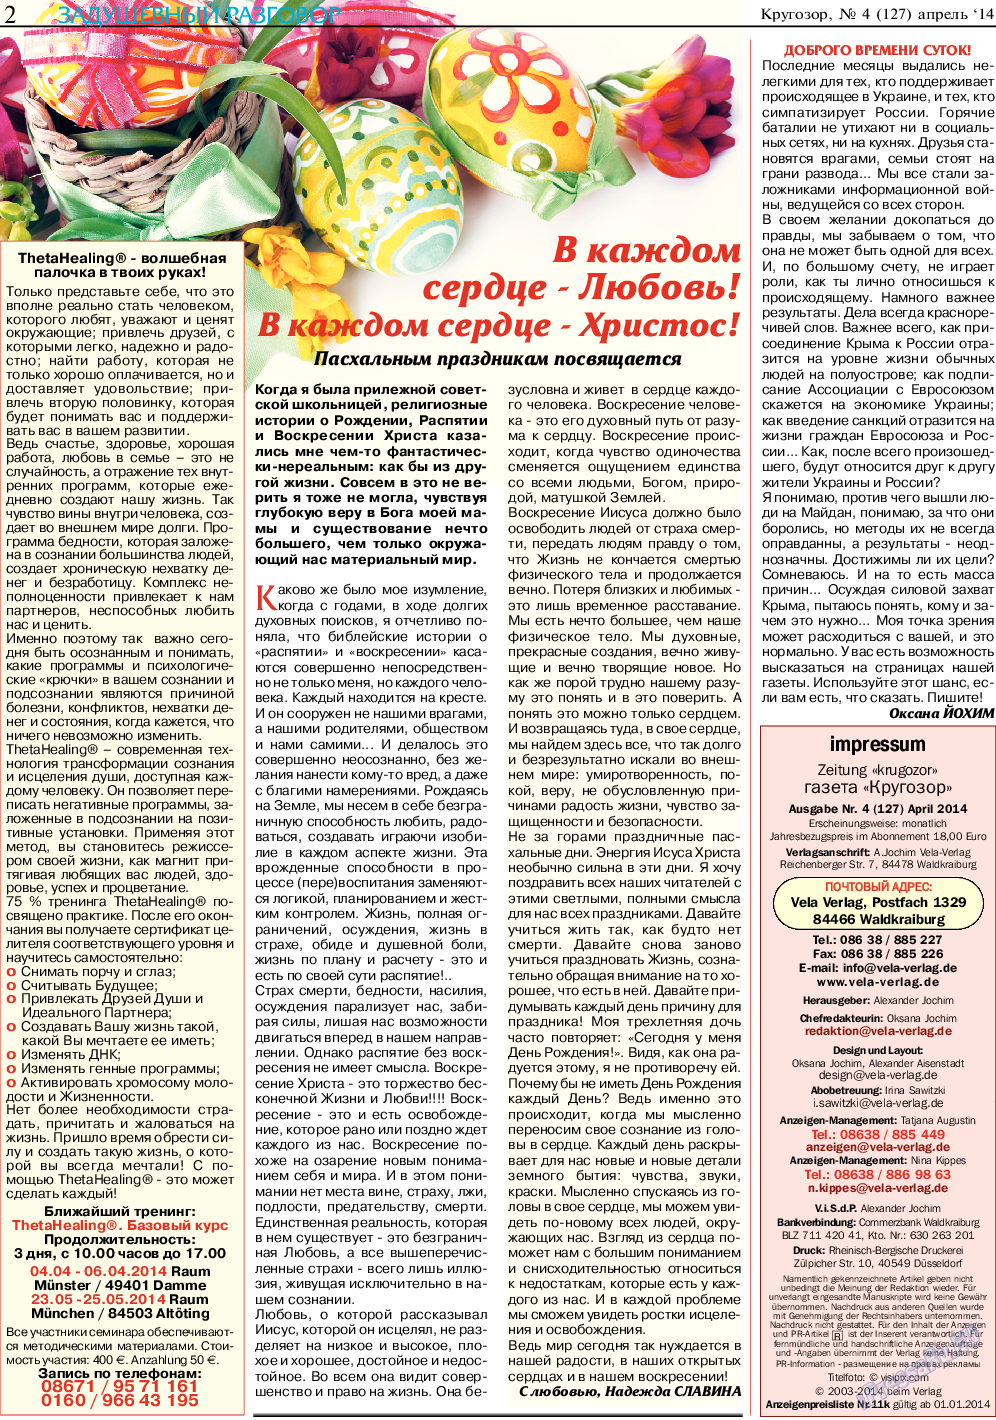 Кругозор, газета. 2014 №4 стр.2